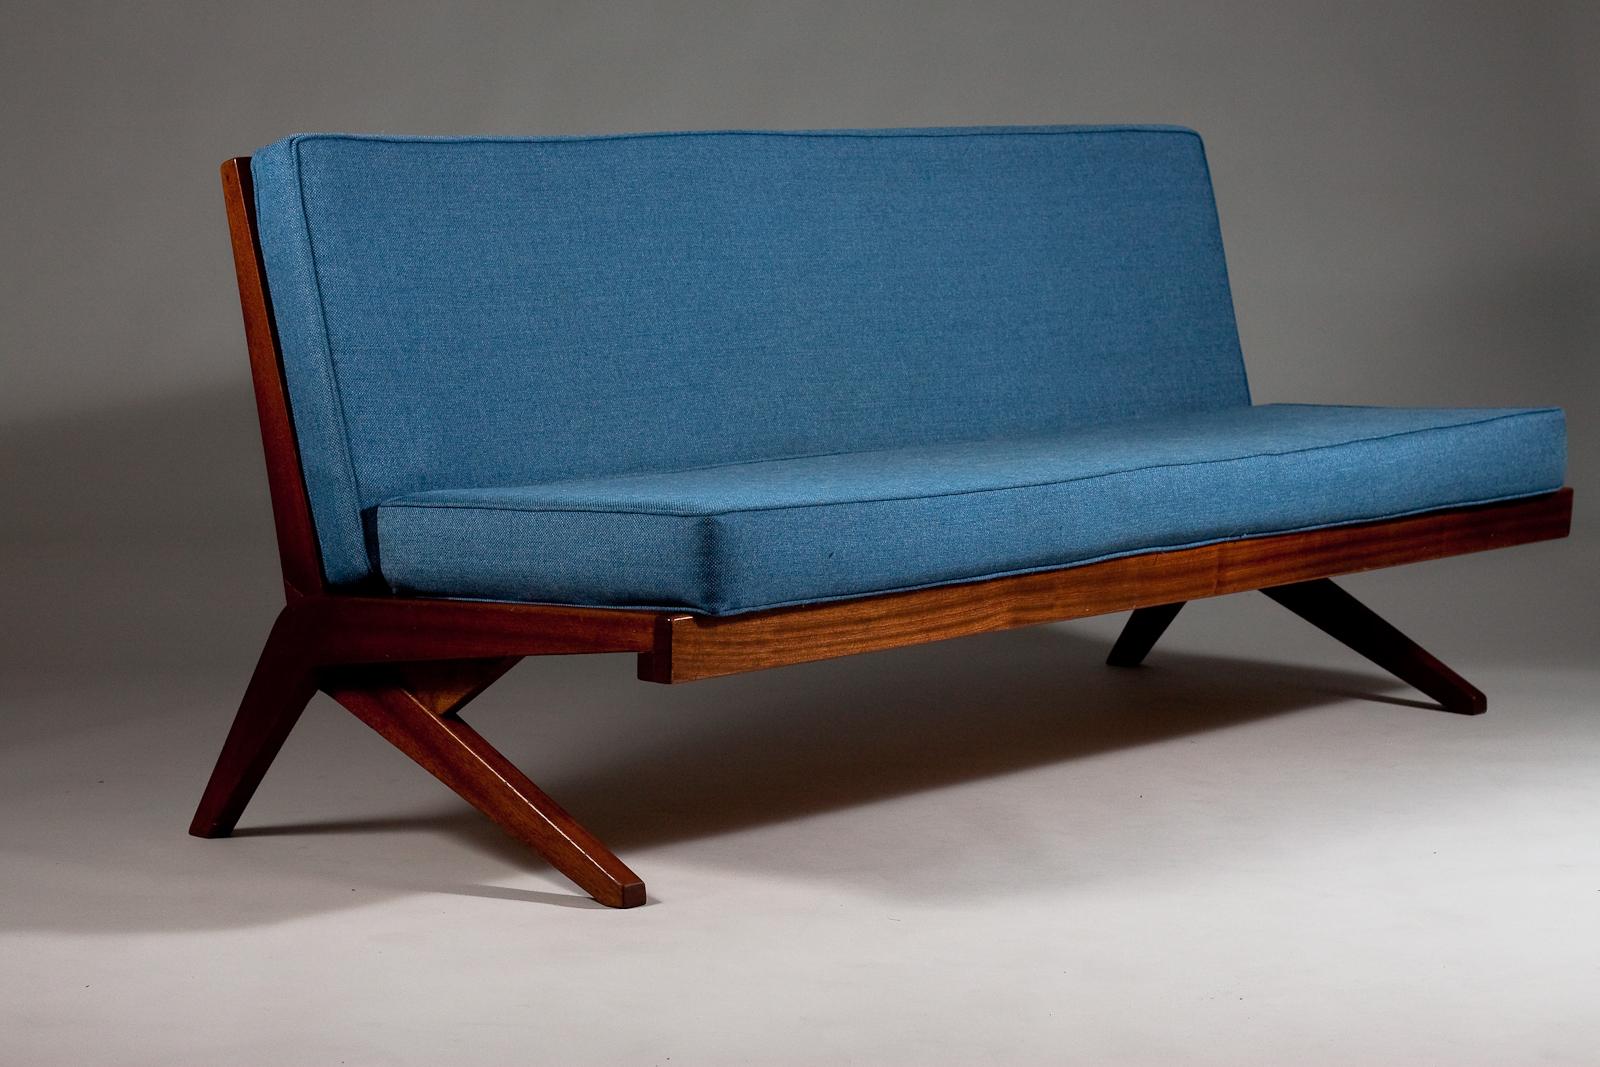 Ajoutez une touche de luxe moderne du milieu du siècle à votre espace avec le canapé Boomerang des années 1960 d'Olavi Hänninen. Fabriquée en acajou, cette pièce emblématique présente la légendaire forme de boomerang qui est devenue synonyme de